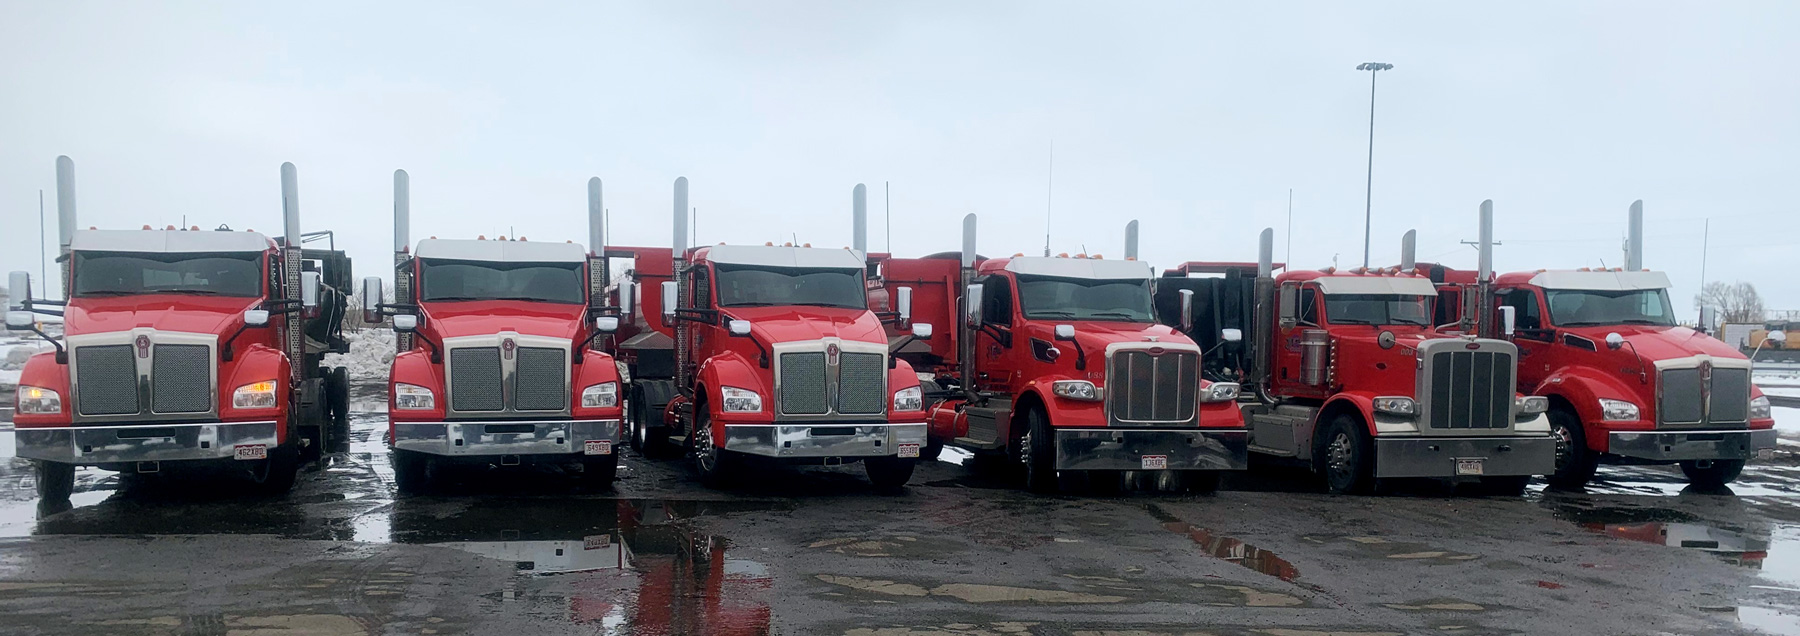 JFW Trucks